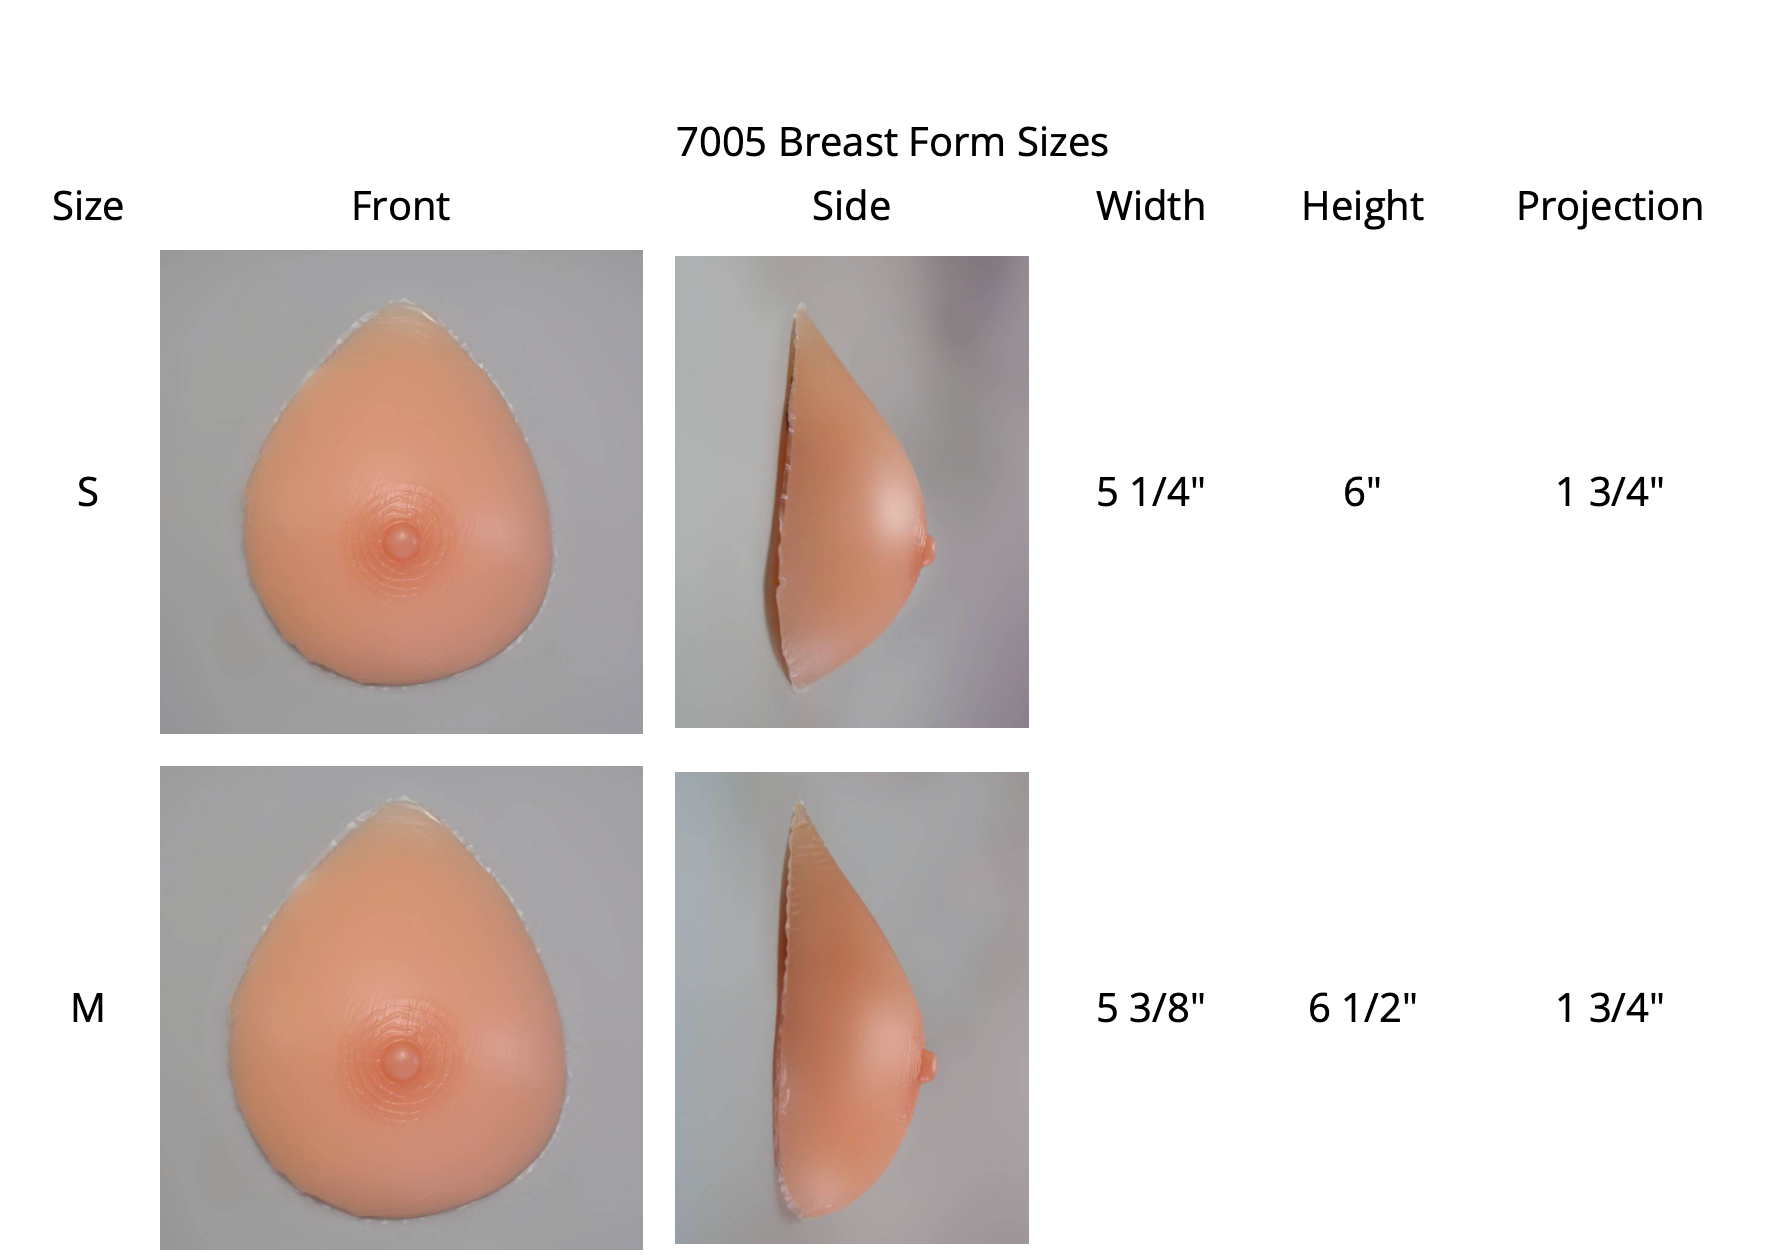 Premium DDD Size Triangular Silicone Breast Forms – En Femme